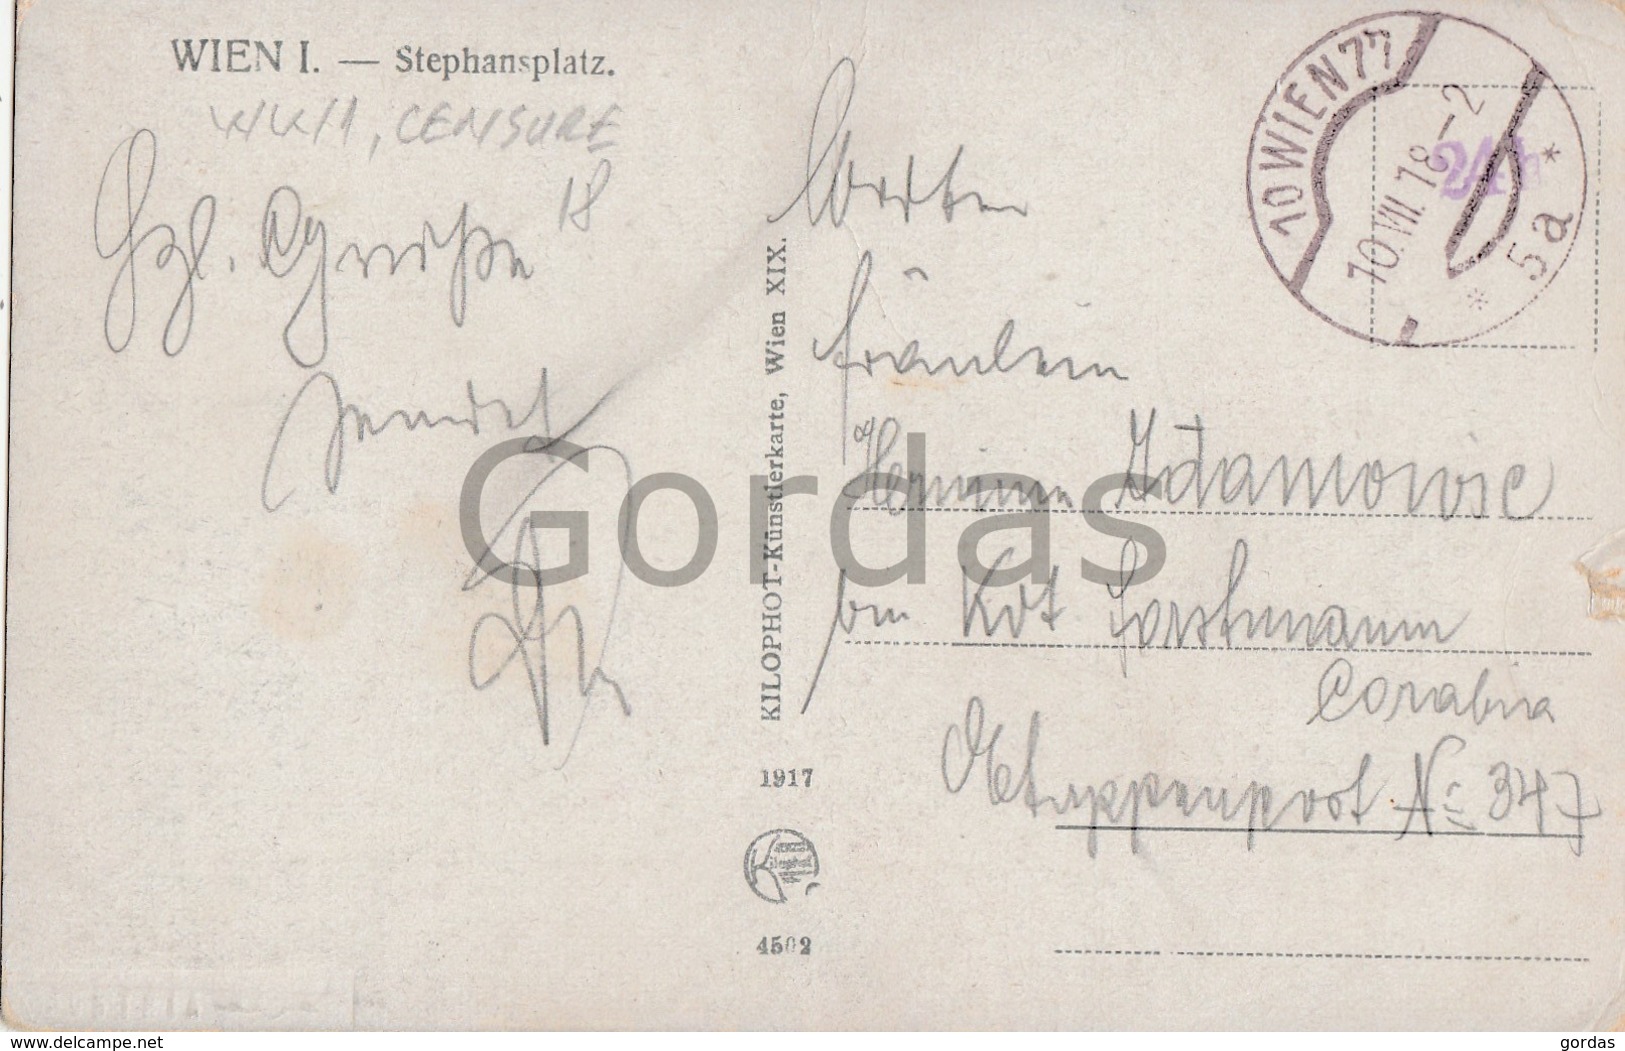 Austria - Wien - Stephansplatz - WW1 - Censure - Stephansplatz